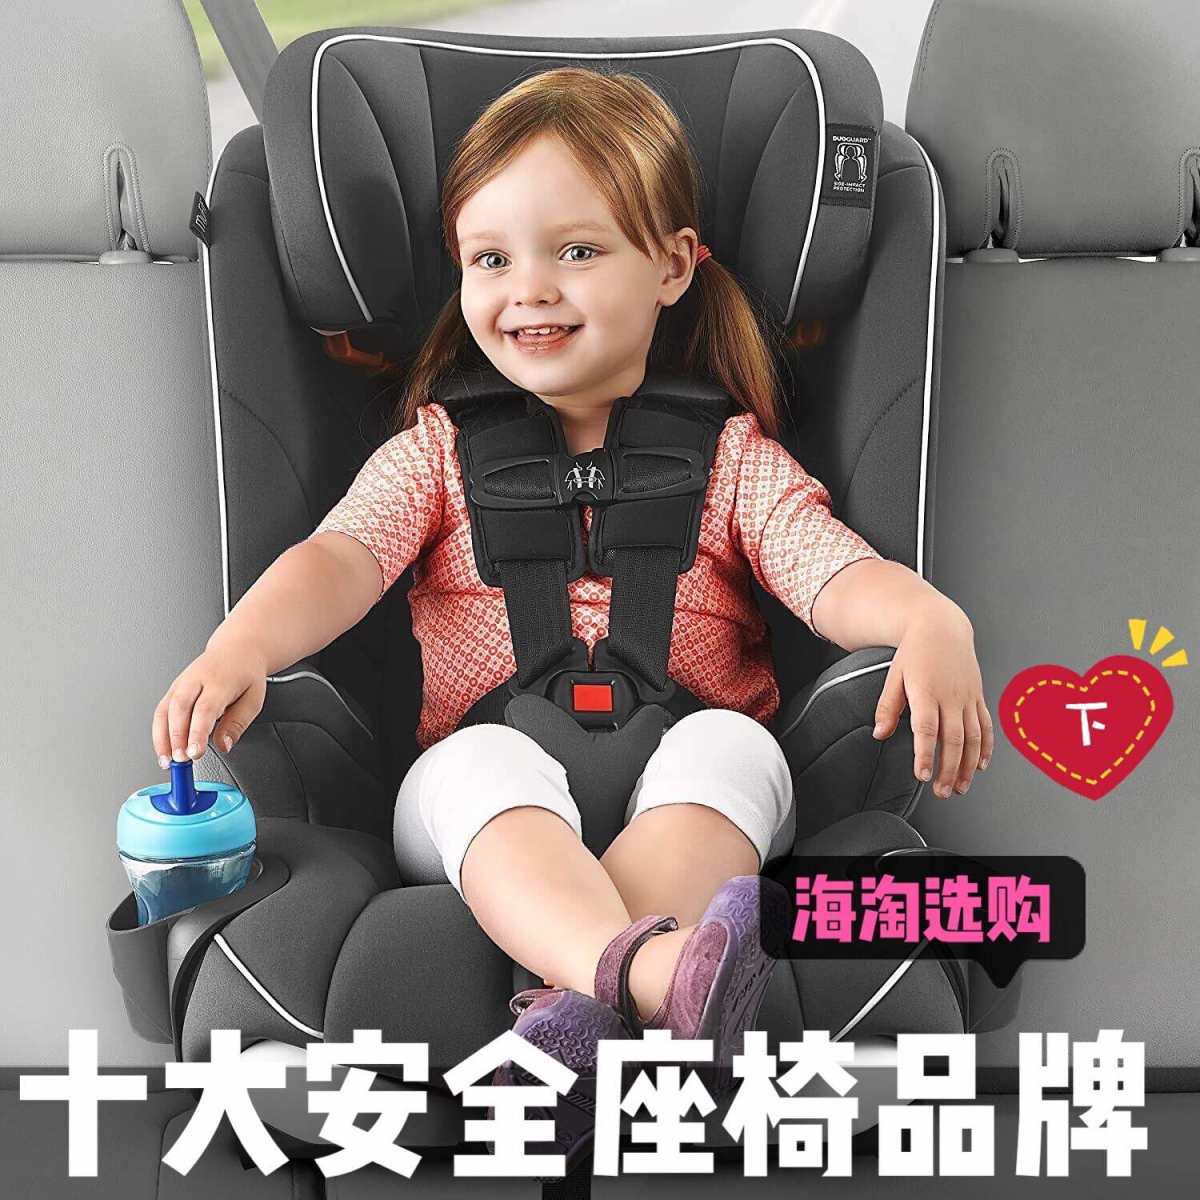 海淘婴儿安全座椅十大品牌推荐（下）  ☪☪☪☪ 品牌：荷兰M